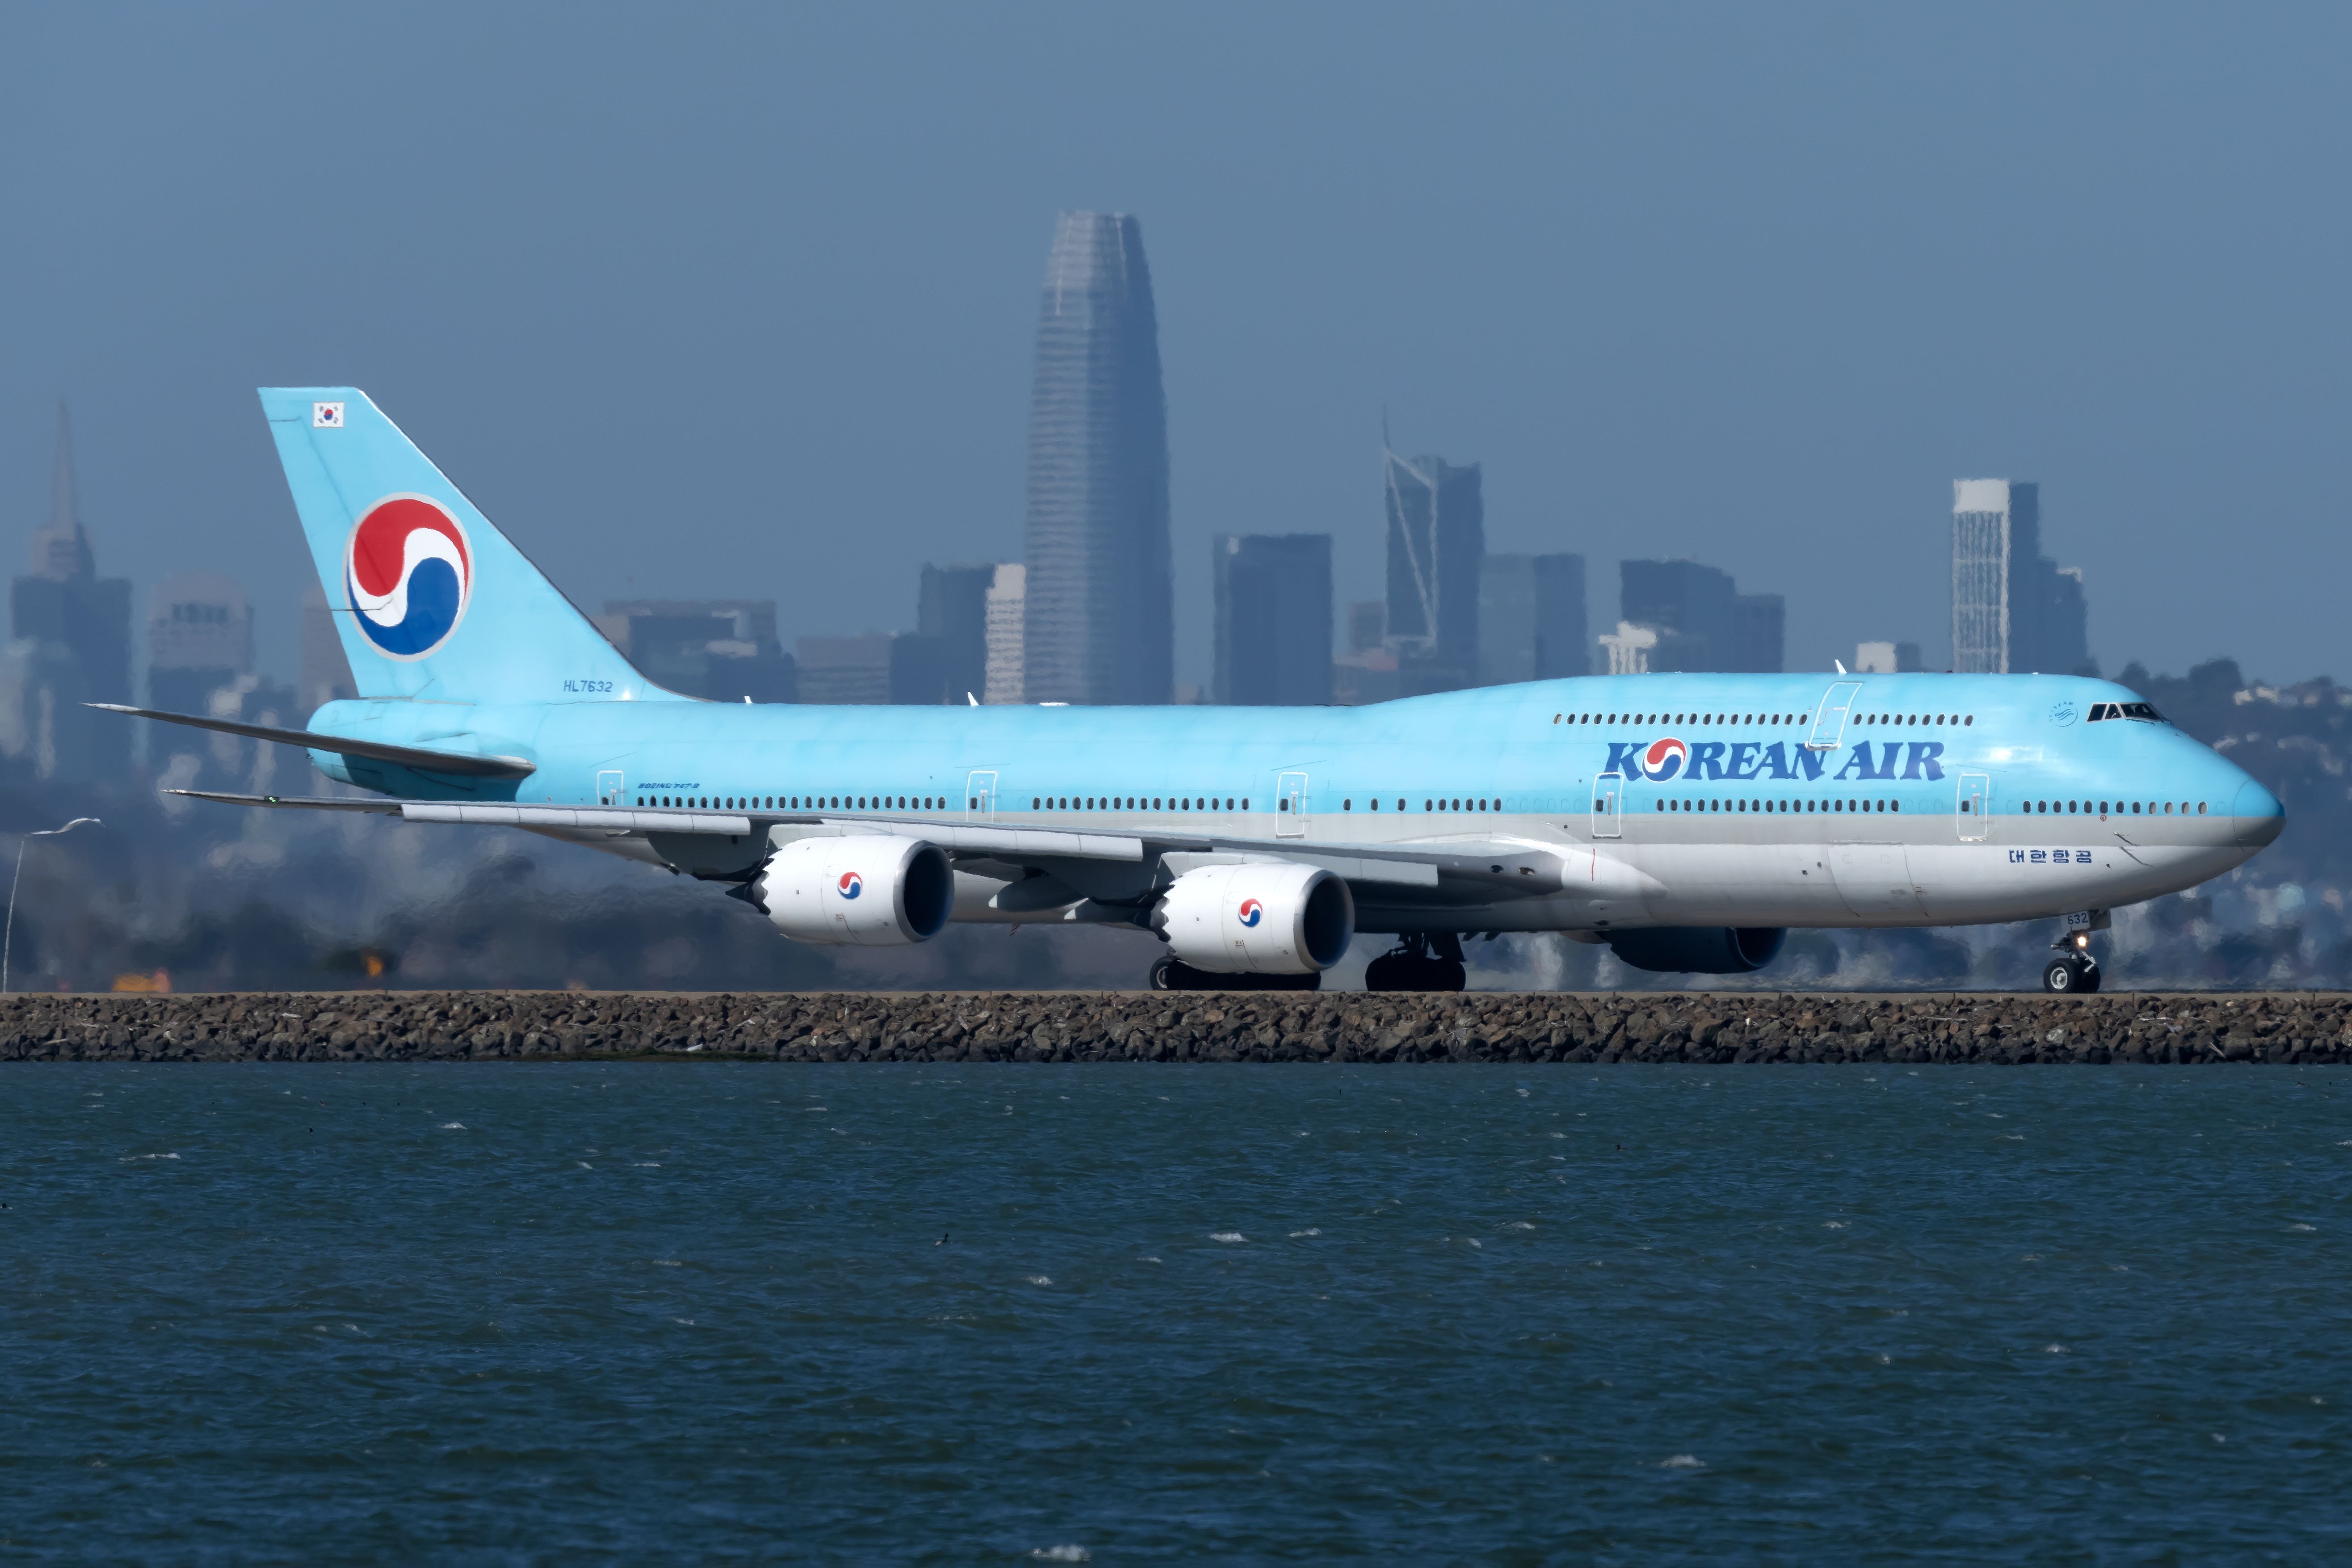 Korean Air Boeing 747-8